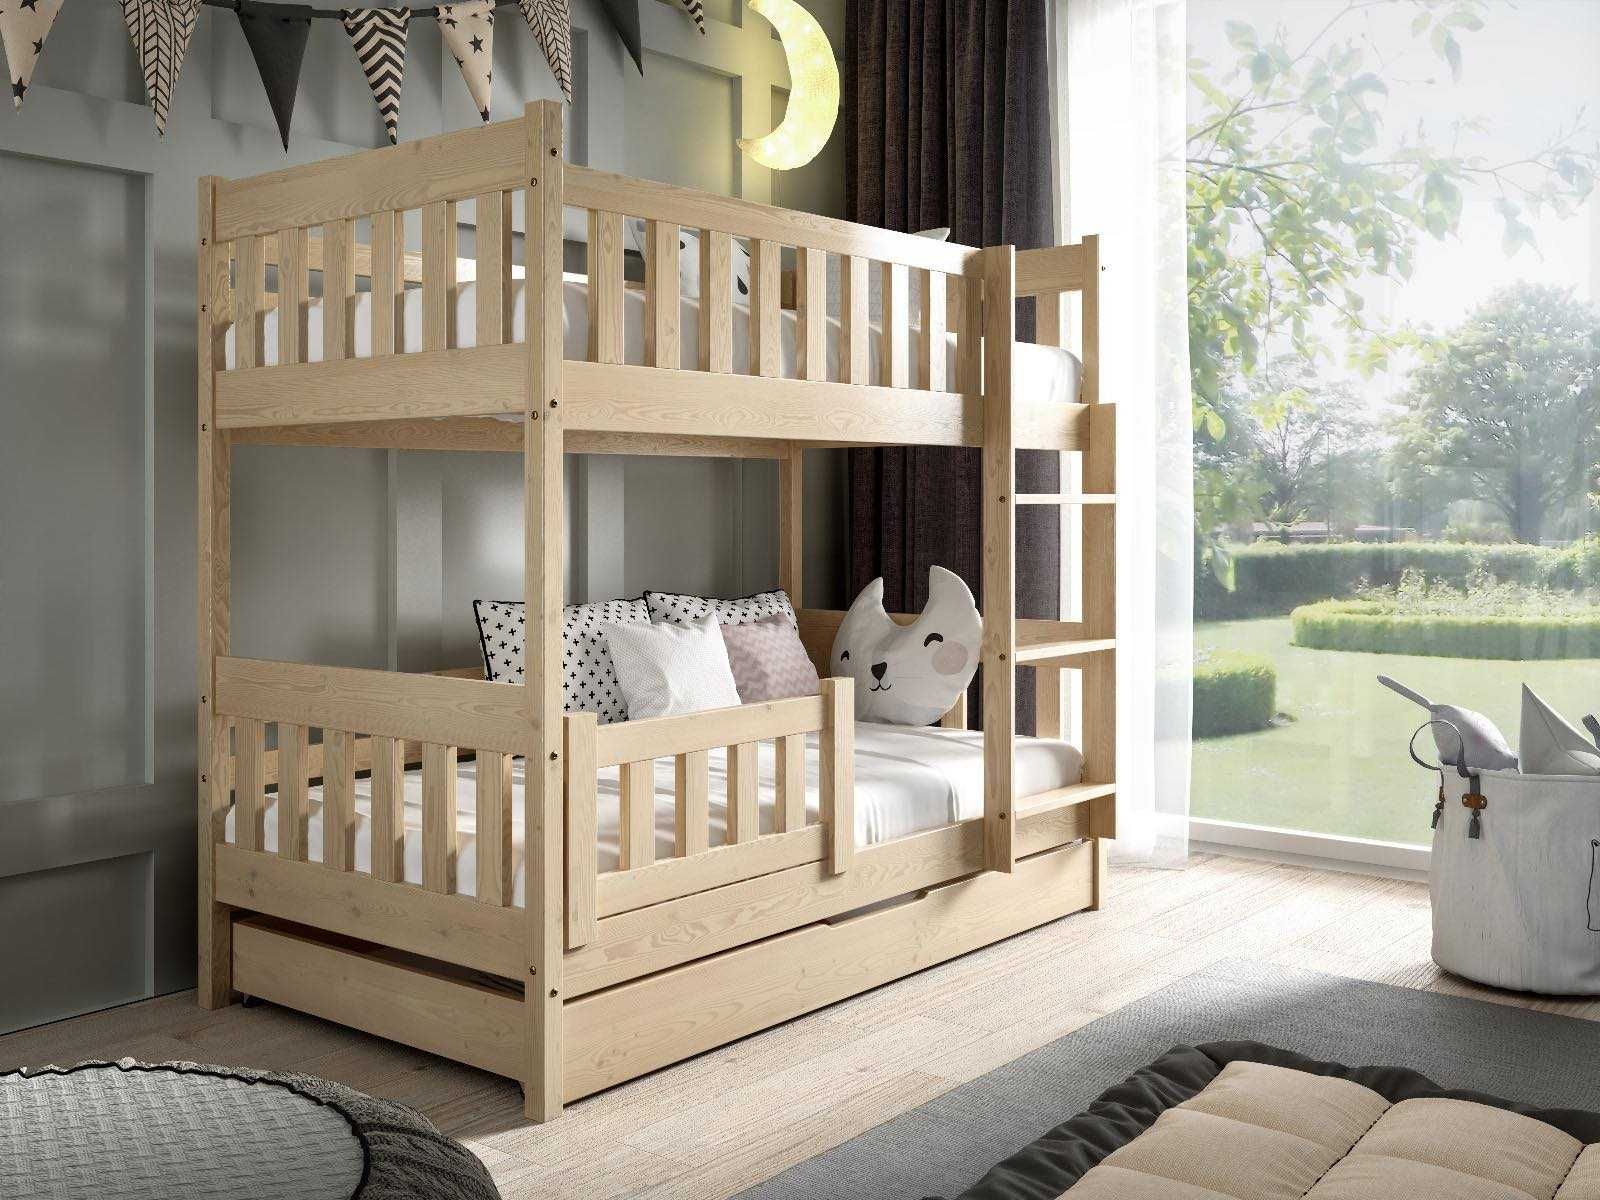 Łóżko dla 2 dzieci sosnowe piętrowe LILA 160X80 - materace GRATIS